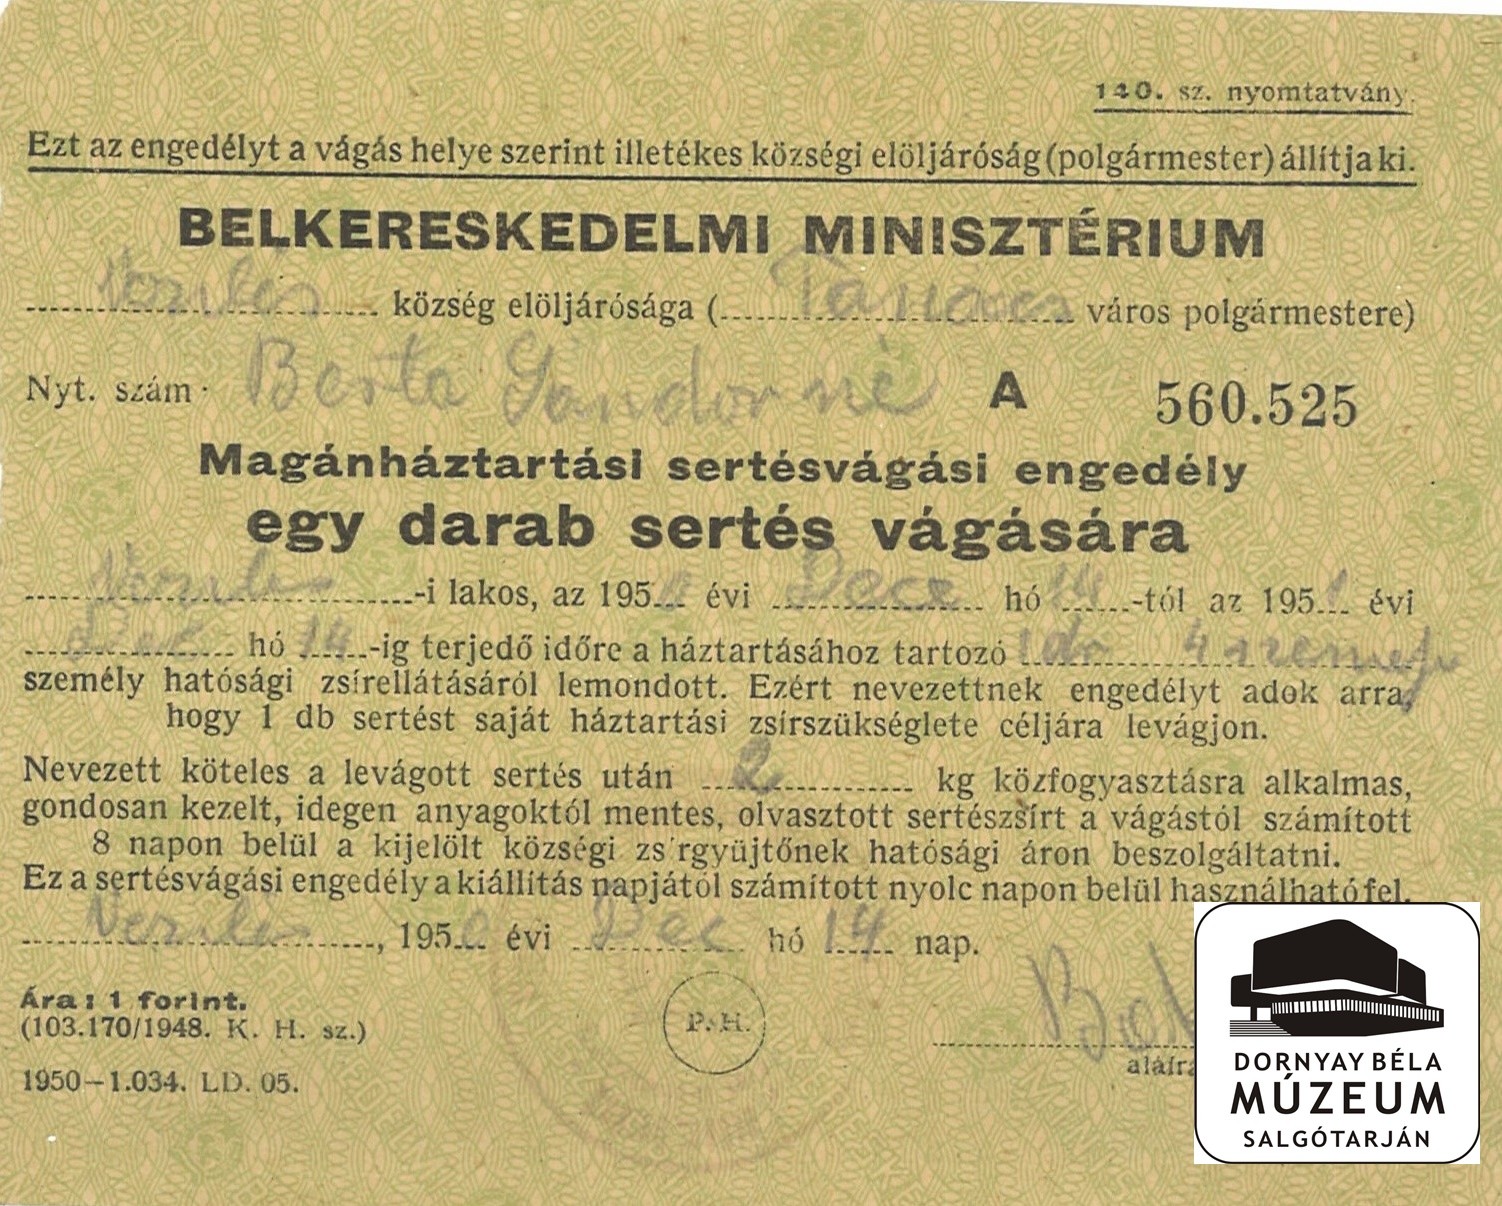 Berta Sándorné sertésvágási engedélye (Dornyay Béla Múzeum, Salgótarján CC BY-NC-SA)